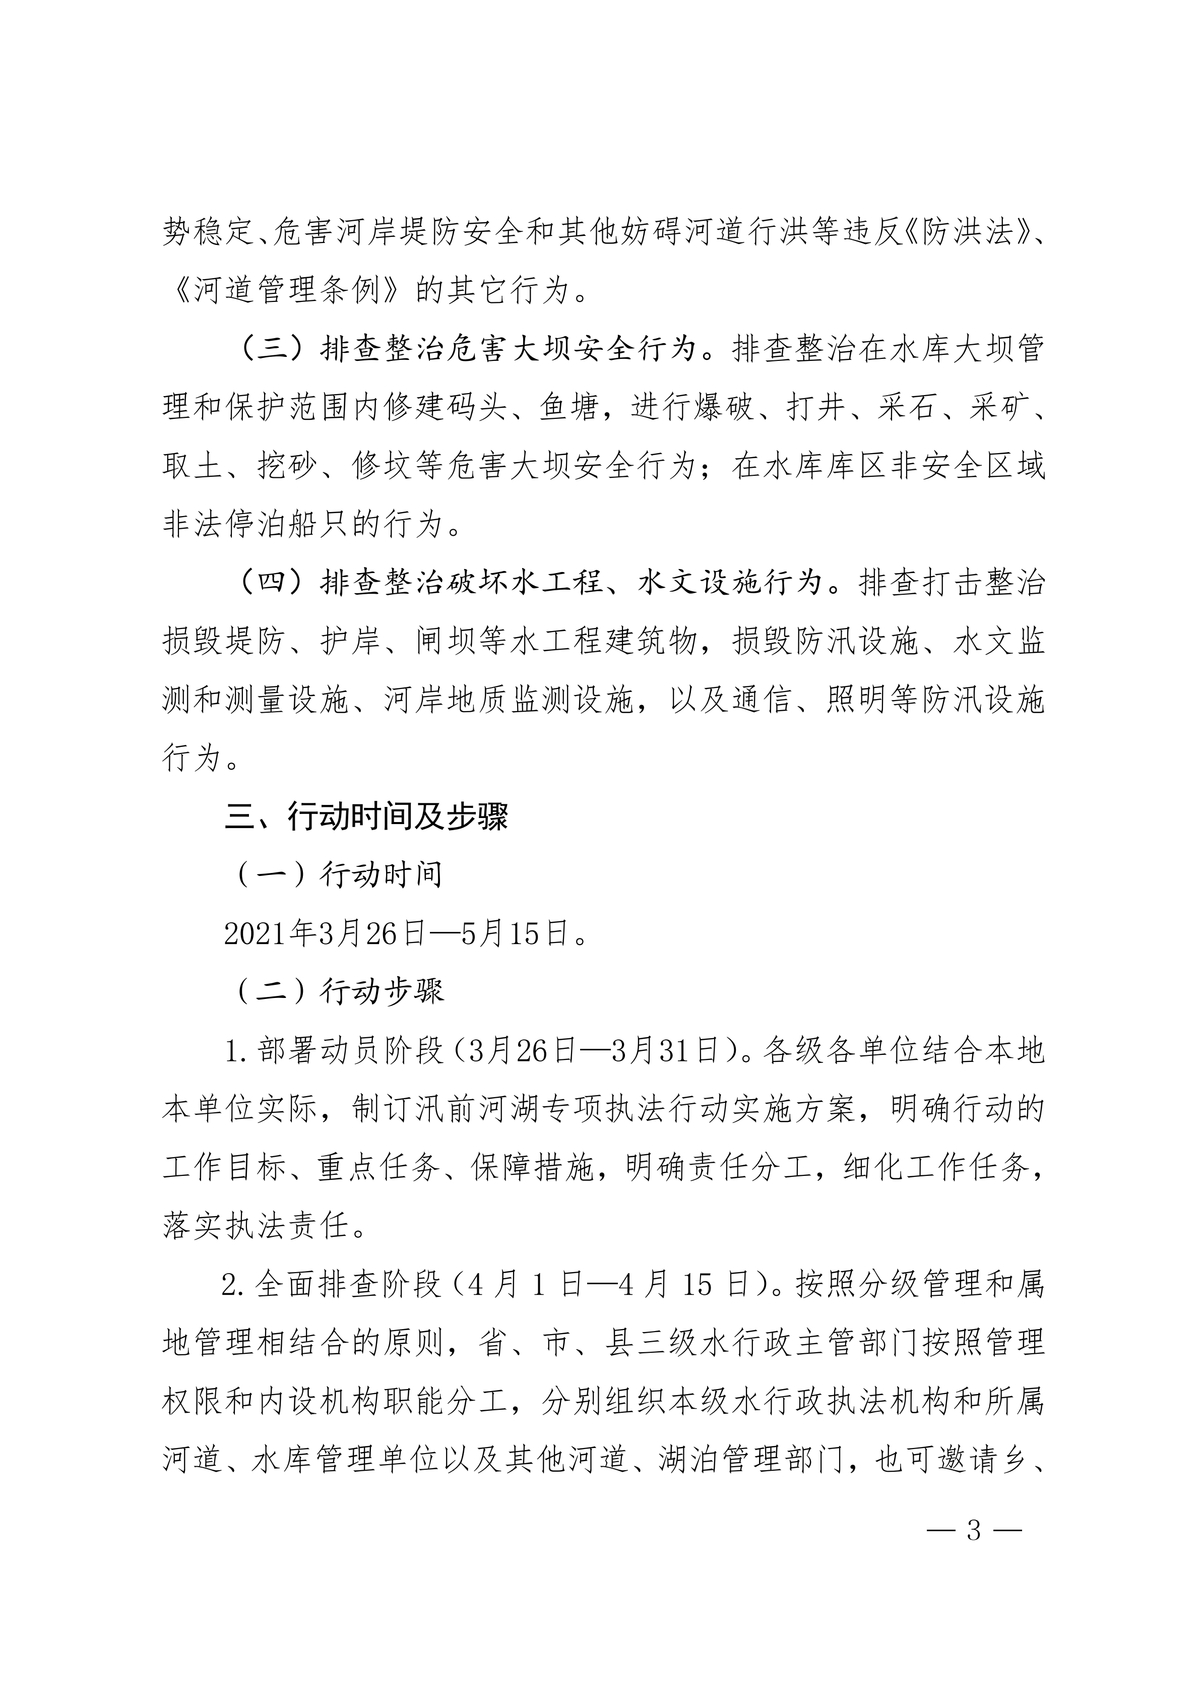 河南省水利厅办公室关于组织开展2021年汛前河湖专项执法行动的通知